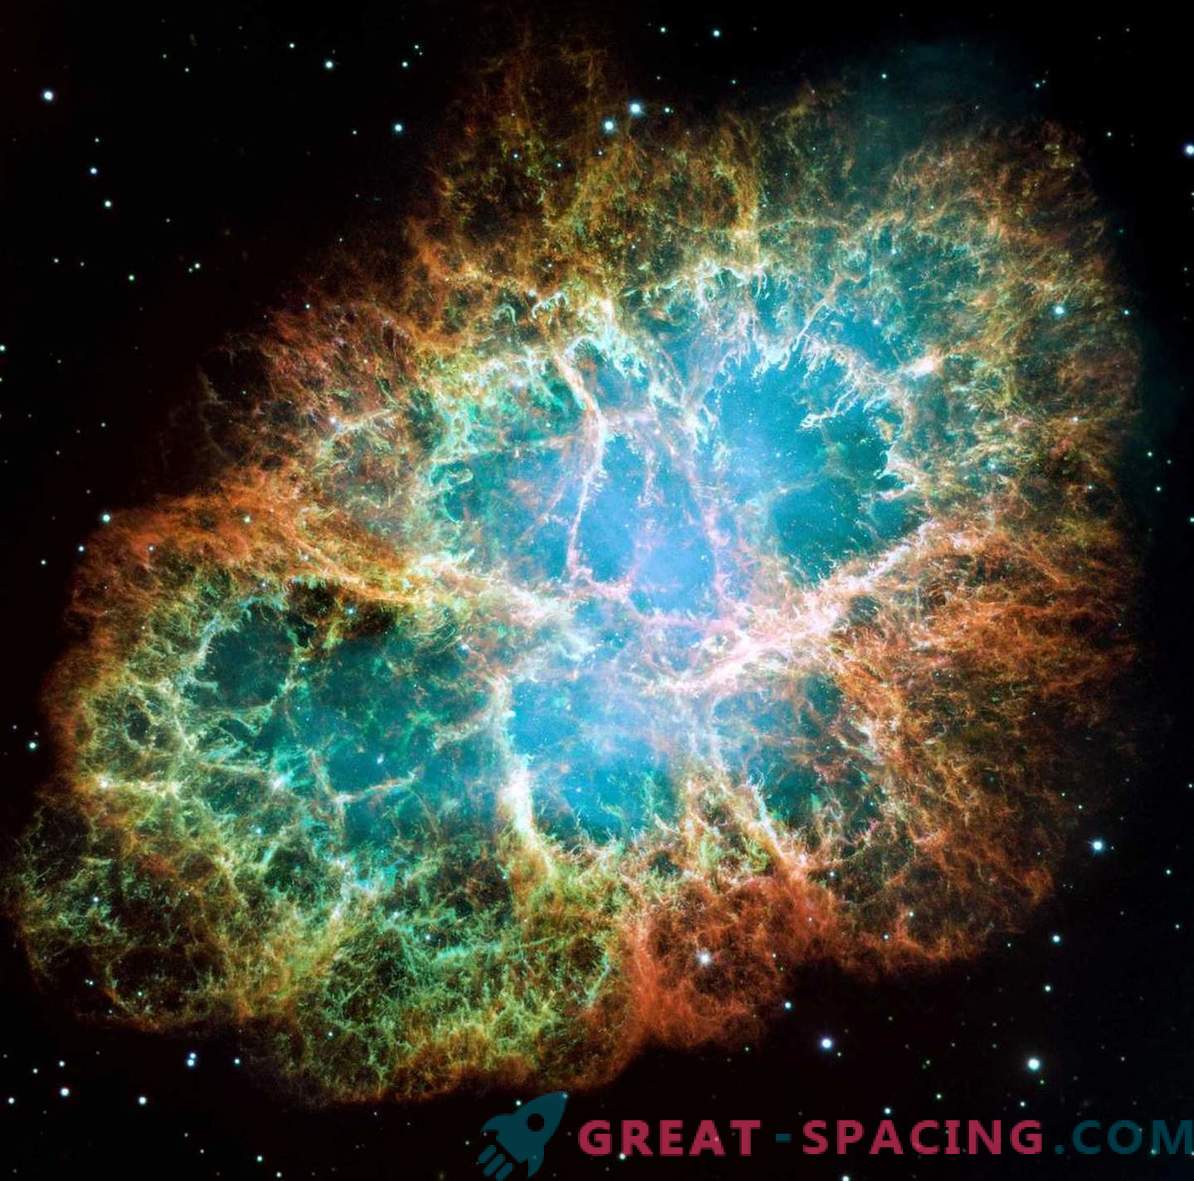 Astronomi so najprej podrobno zabeležili eksplozijo supernove.